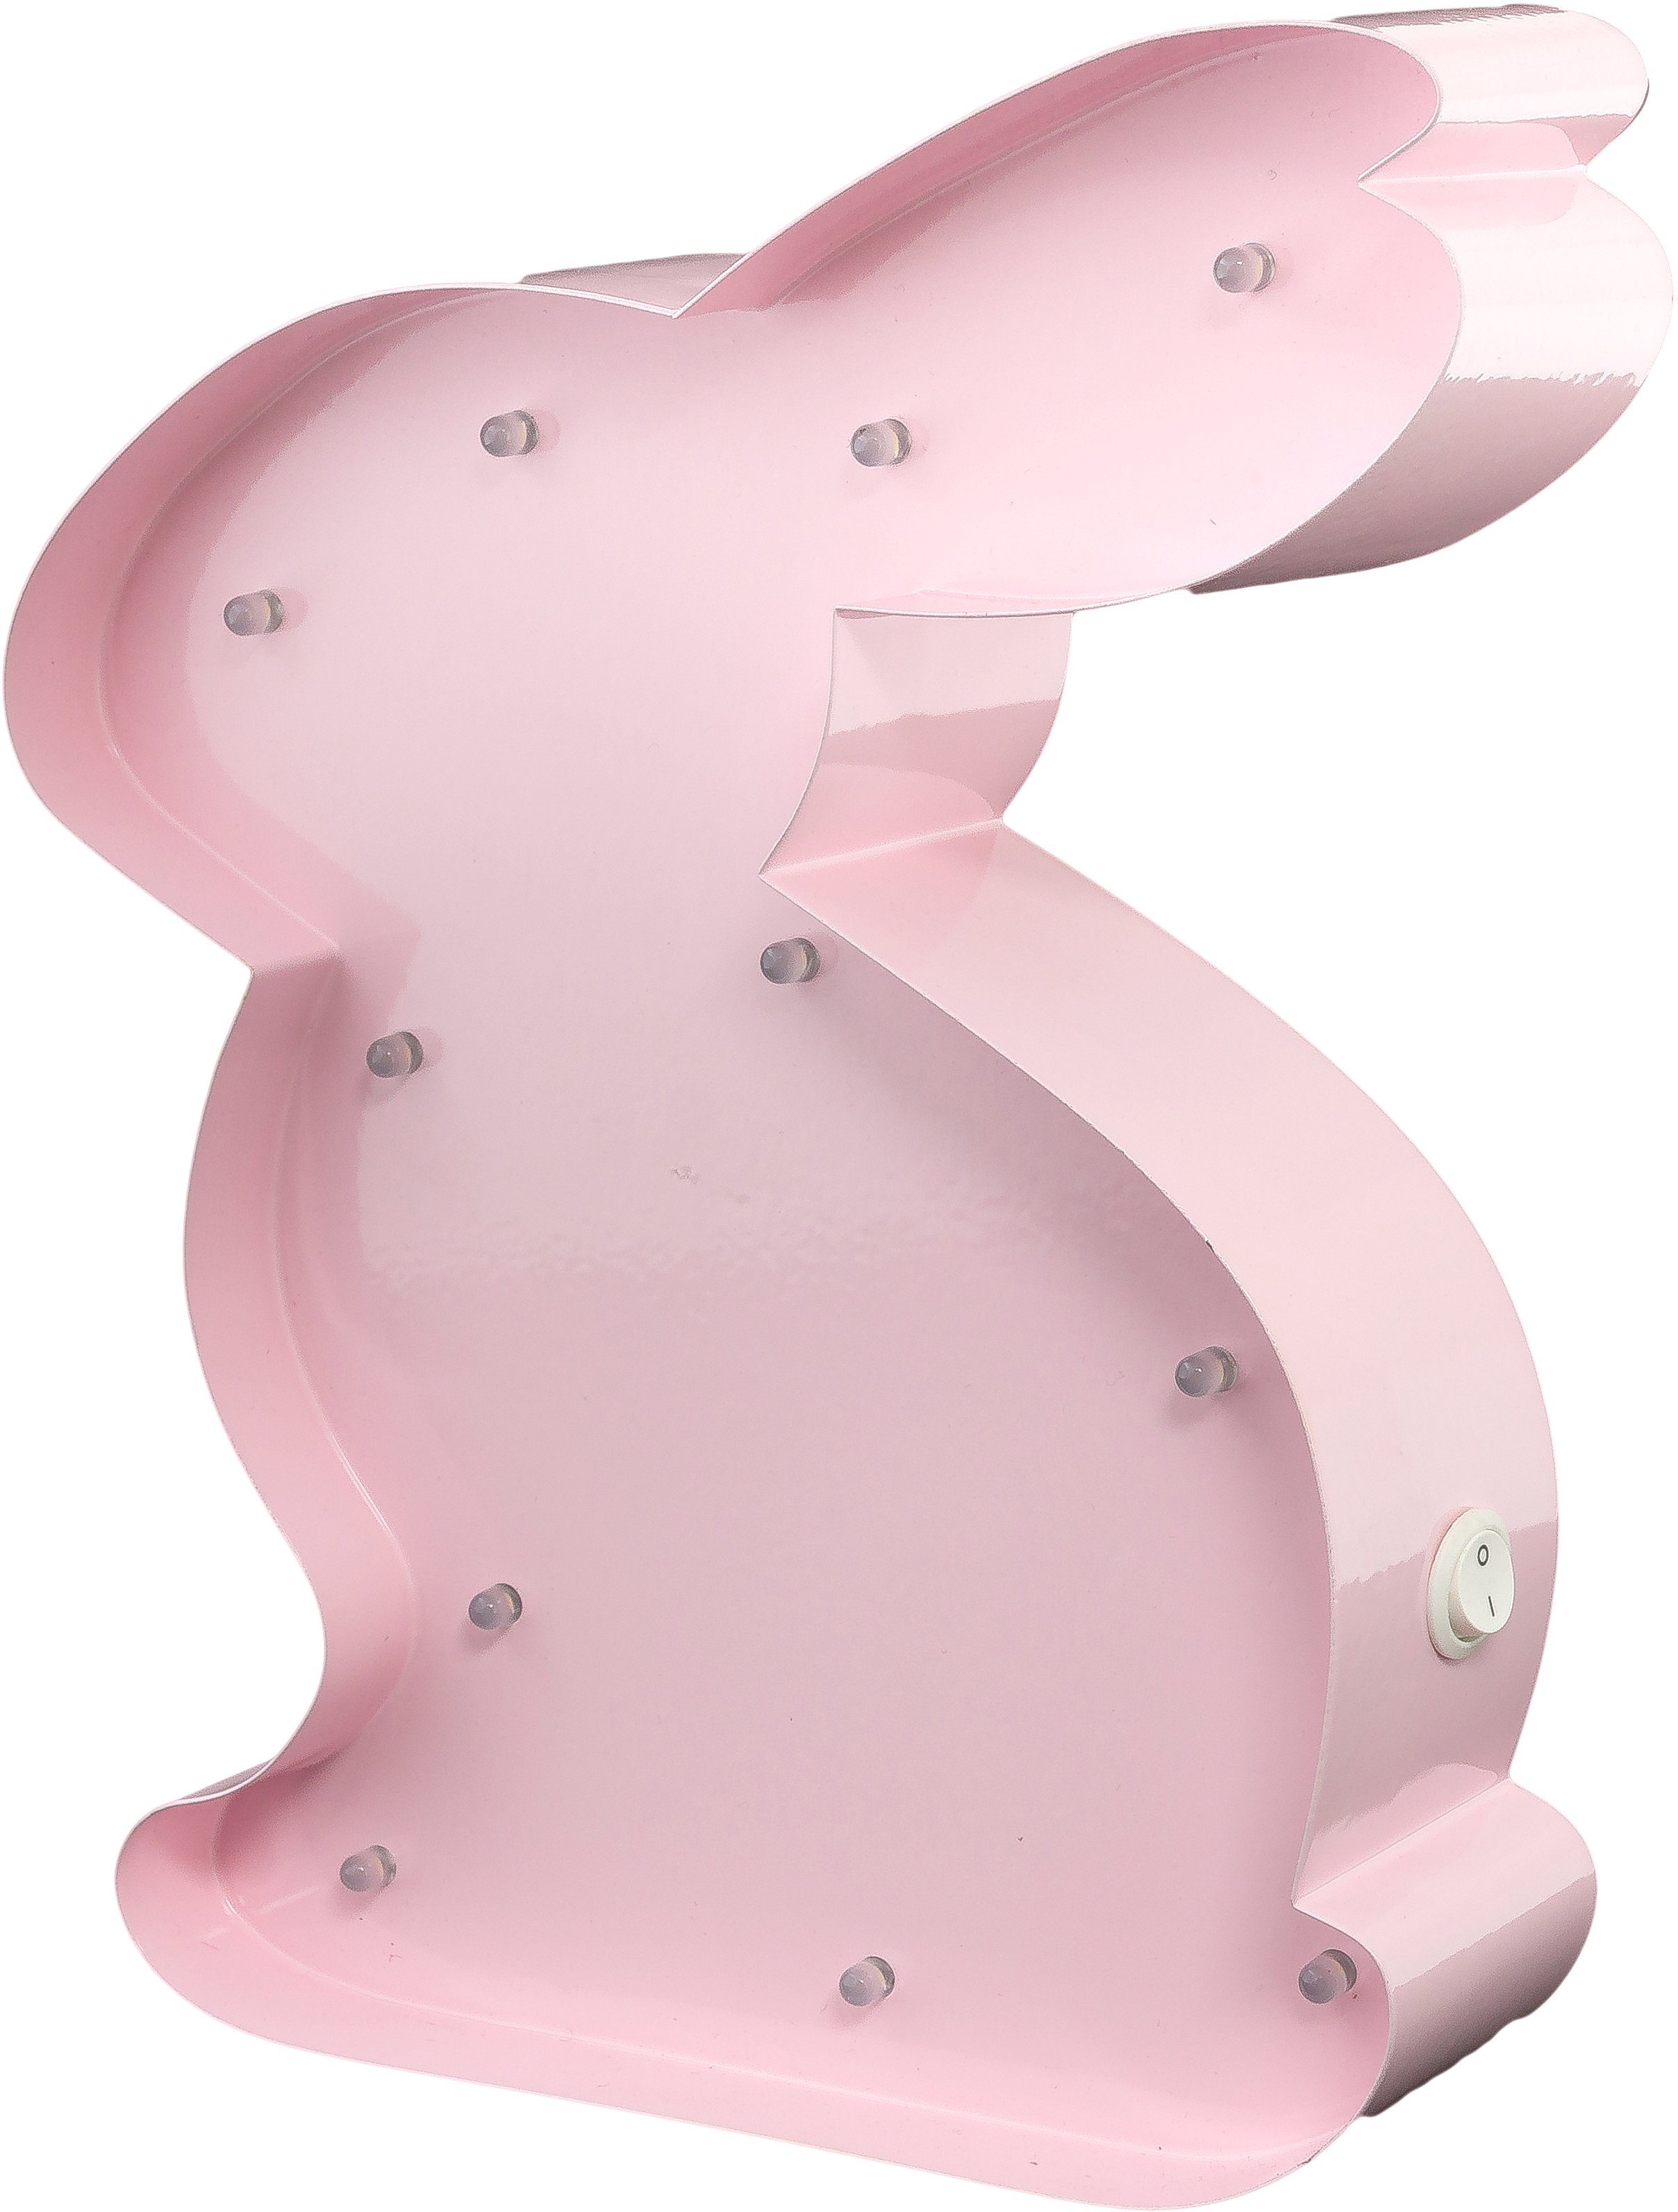 MARQUEE LIGHTS LED Rabbit, fest - LEDs festverbauten integriert, Dekolicht Metall LED Warmweiß, 15x23 cm, Hochwertig Tischlampe 11 Wandlampe, Rabbit mit pulverbeschichtetes